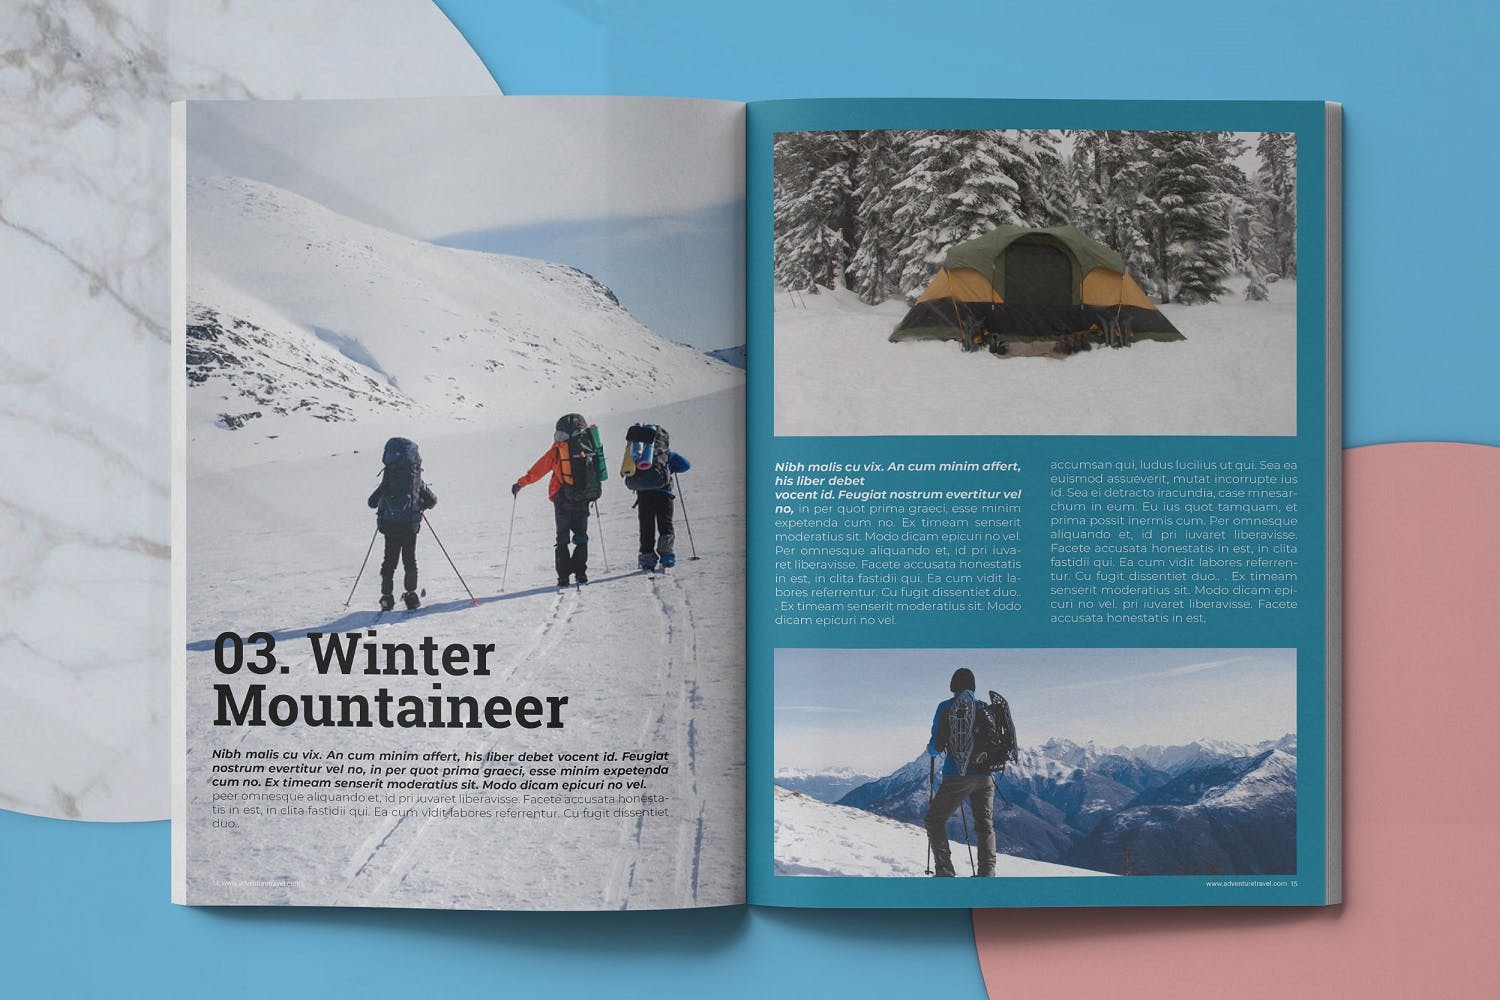 冒险旅行主题非凡图库精选杂志排版设计模板 Adventure Travel Magazine Template插图(7)